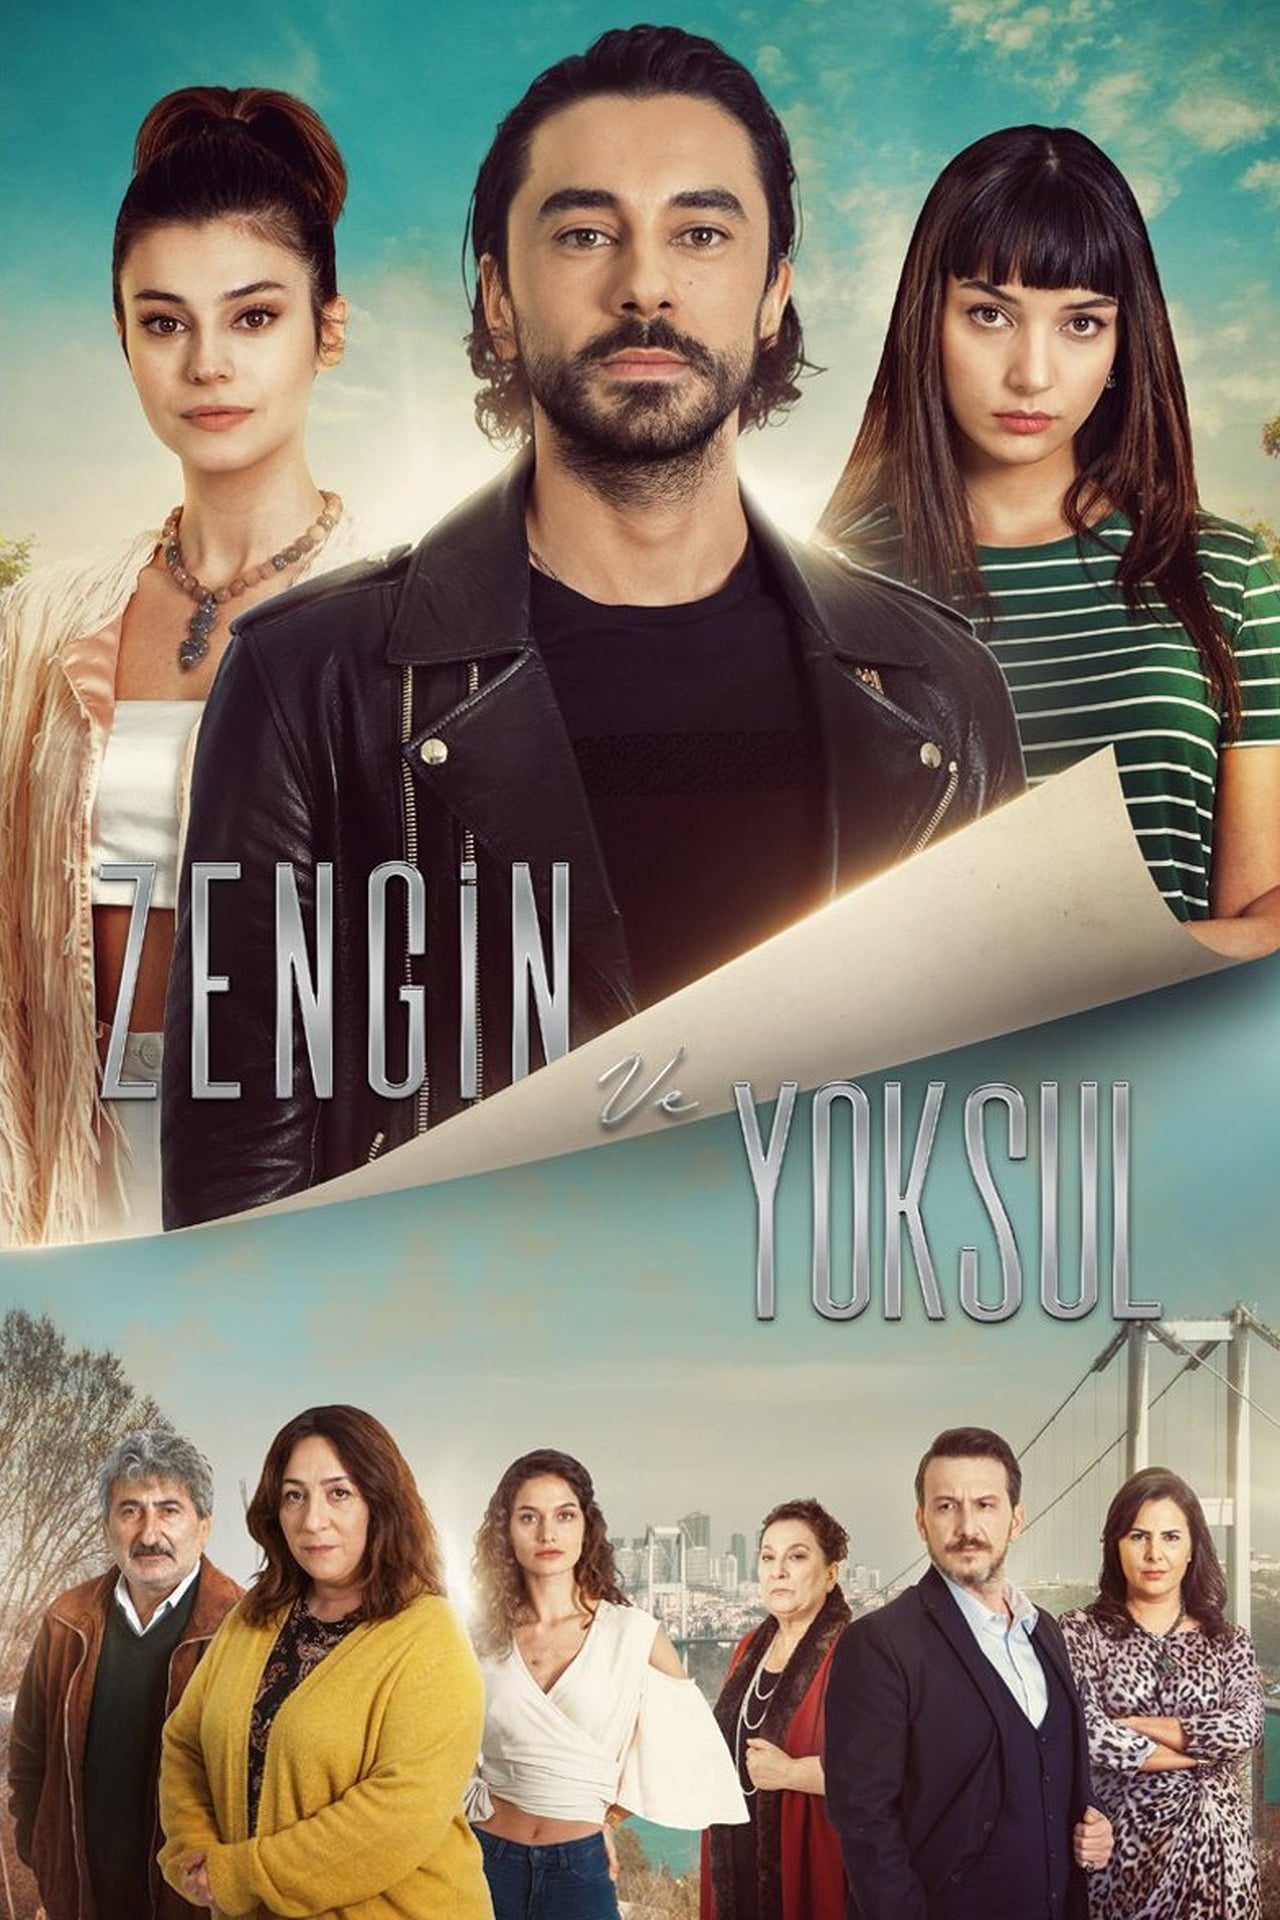 Rico y Pobre | Zengin ve Yoksul | Series Turcas Descargar